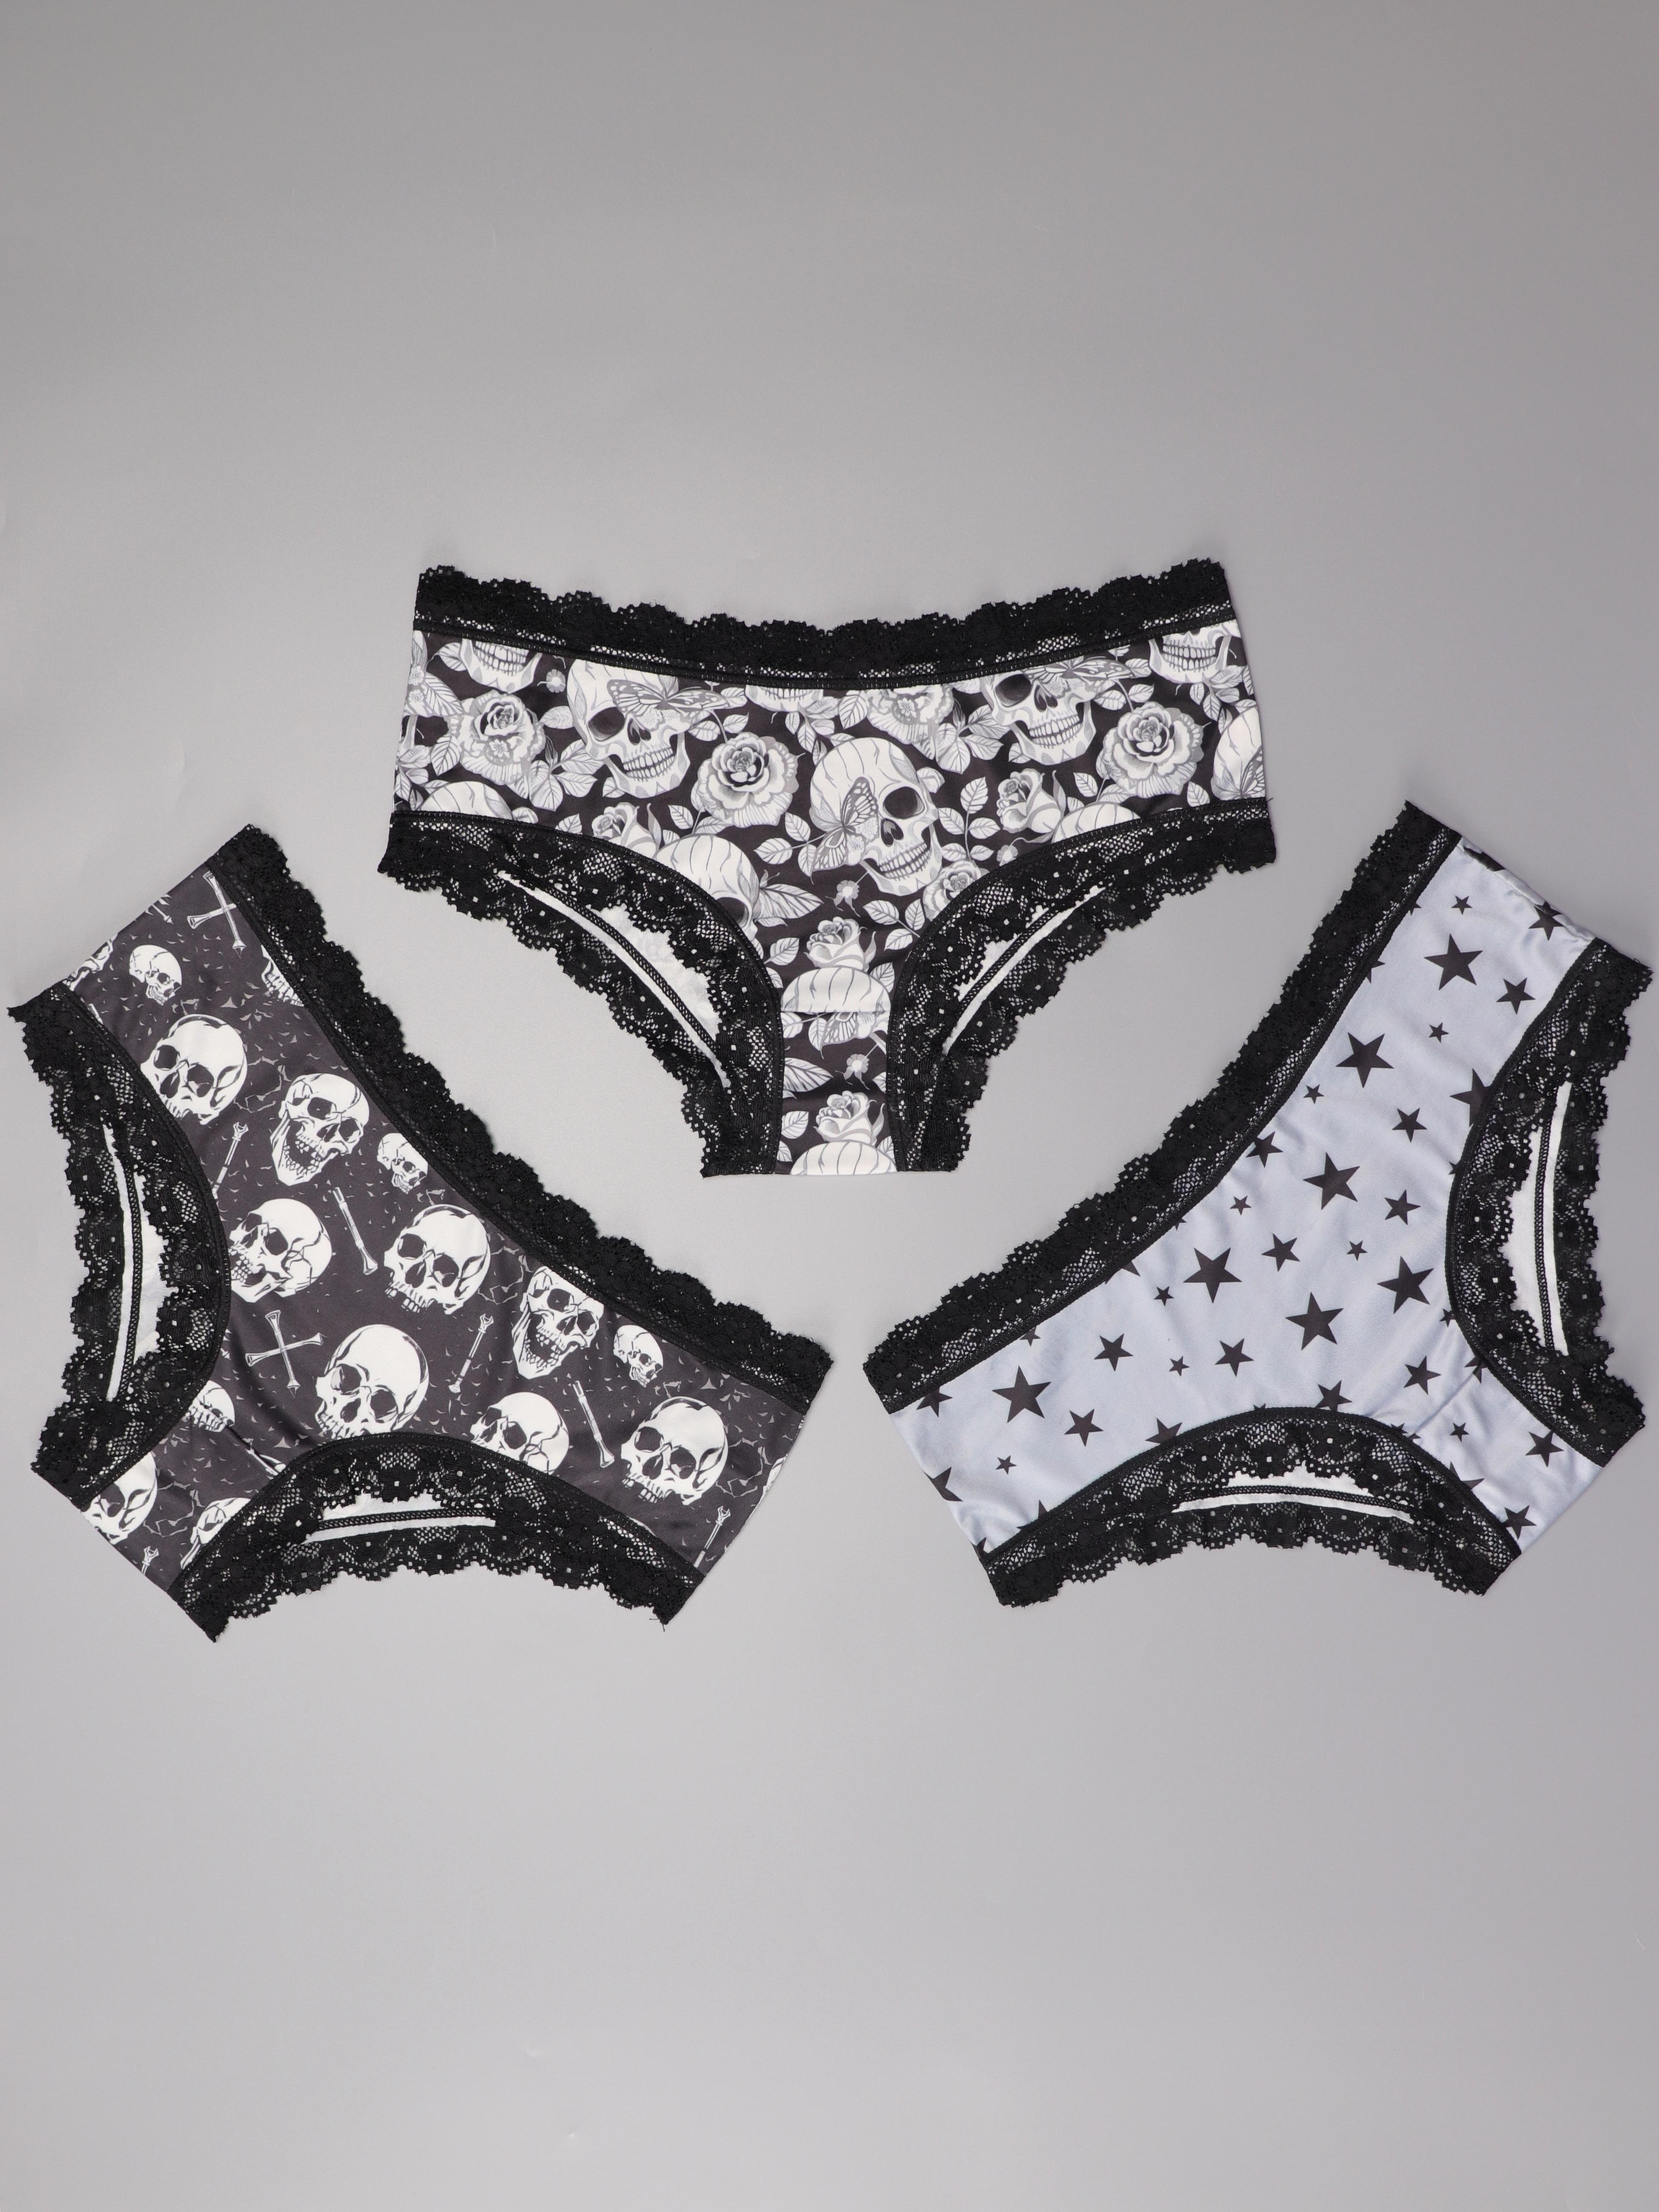 Skeletal Pattern Gothic Skulls Goth Underwear: Underwear From the